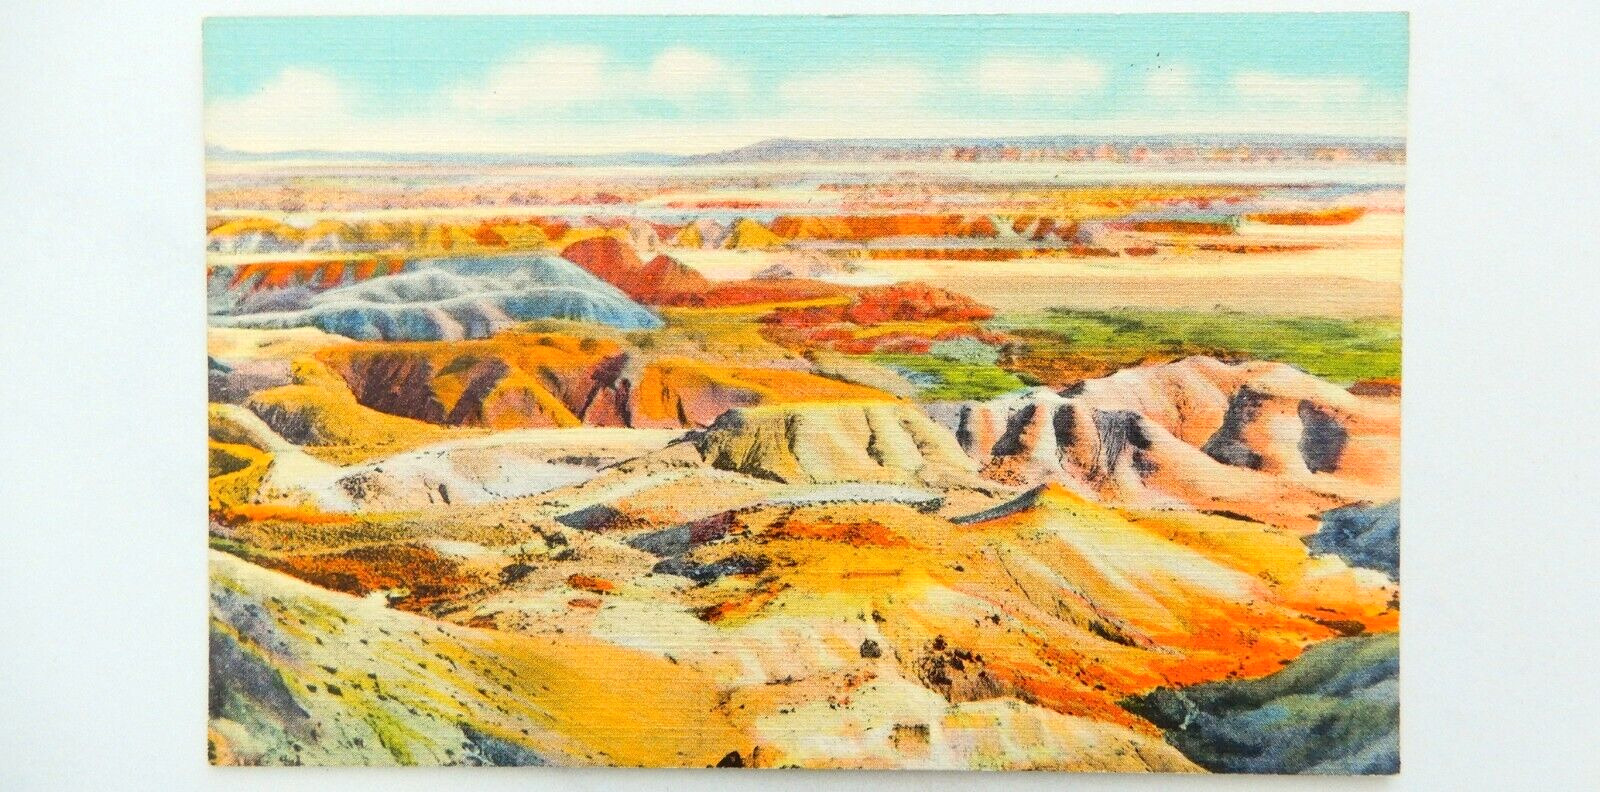 The Painted Desert Postcard Vintage Linen Unused Arizona Sand Rocks Hills Nature